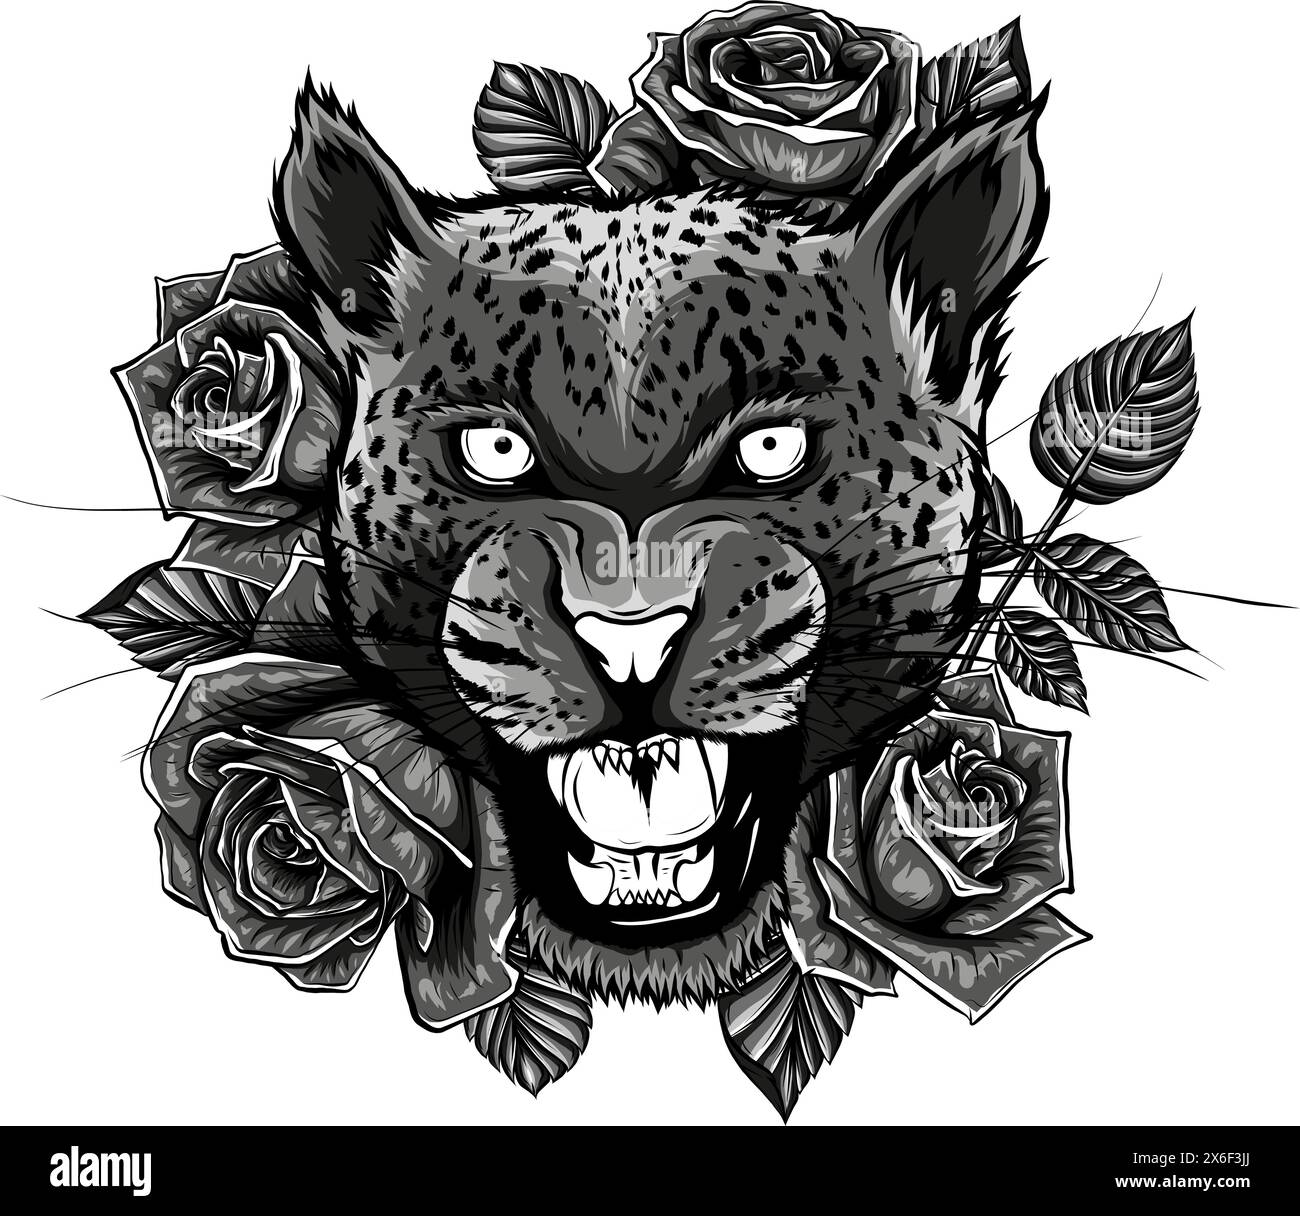 Illustration tête de léopard monochrome avec rose autour Illustration de Vecteur